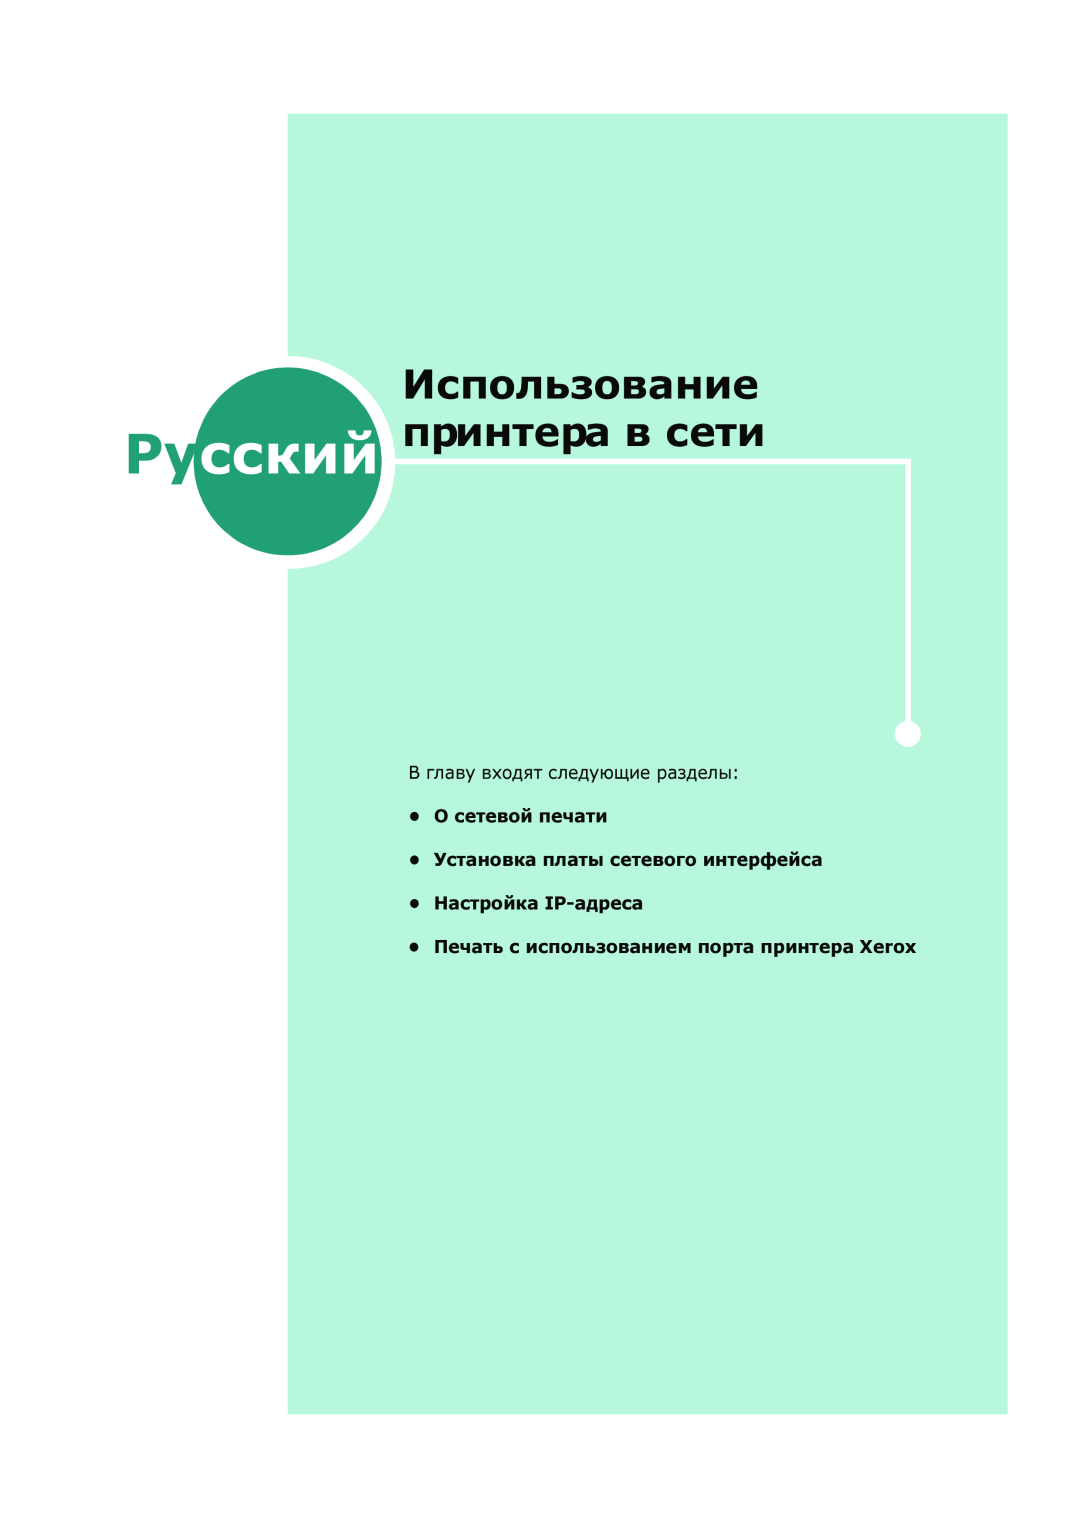 Xerox 3150 manual Использование Русский принтера в сети, В главу входят следующие разделы О сетевой печати 